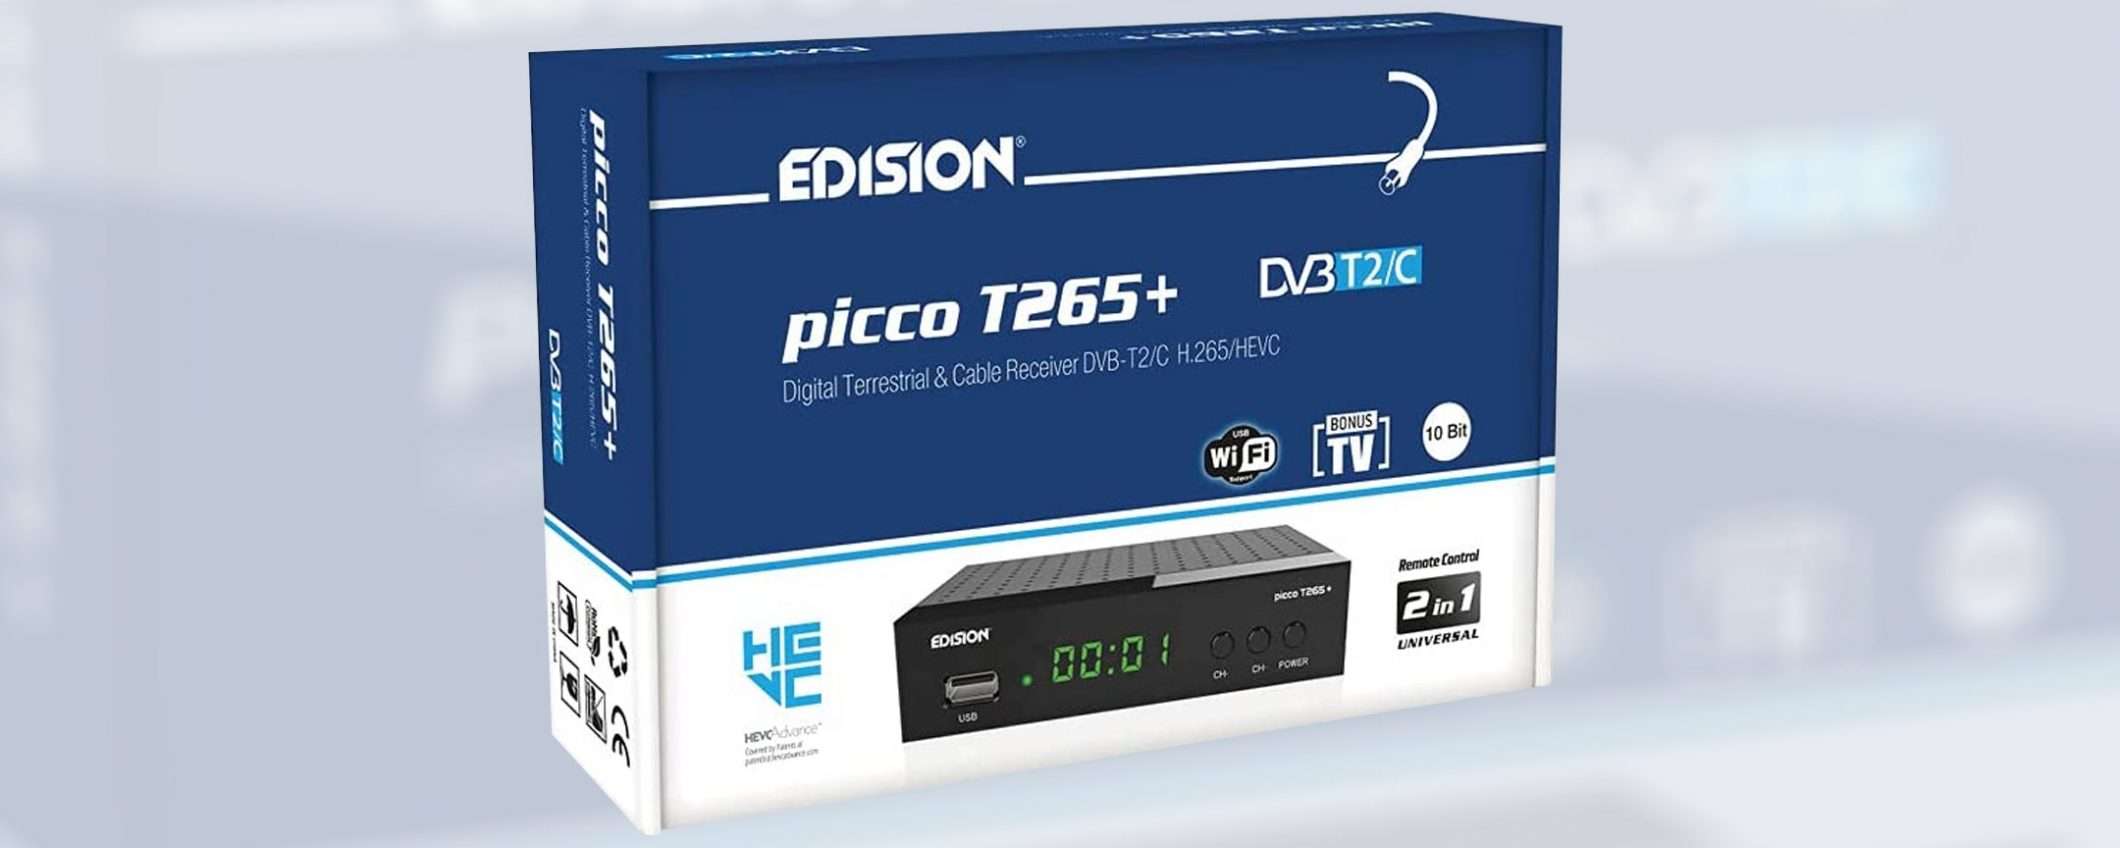 EDISION PICCO T265+, il decoder DVB-T2 in sconto